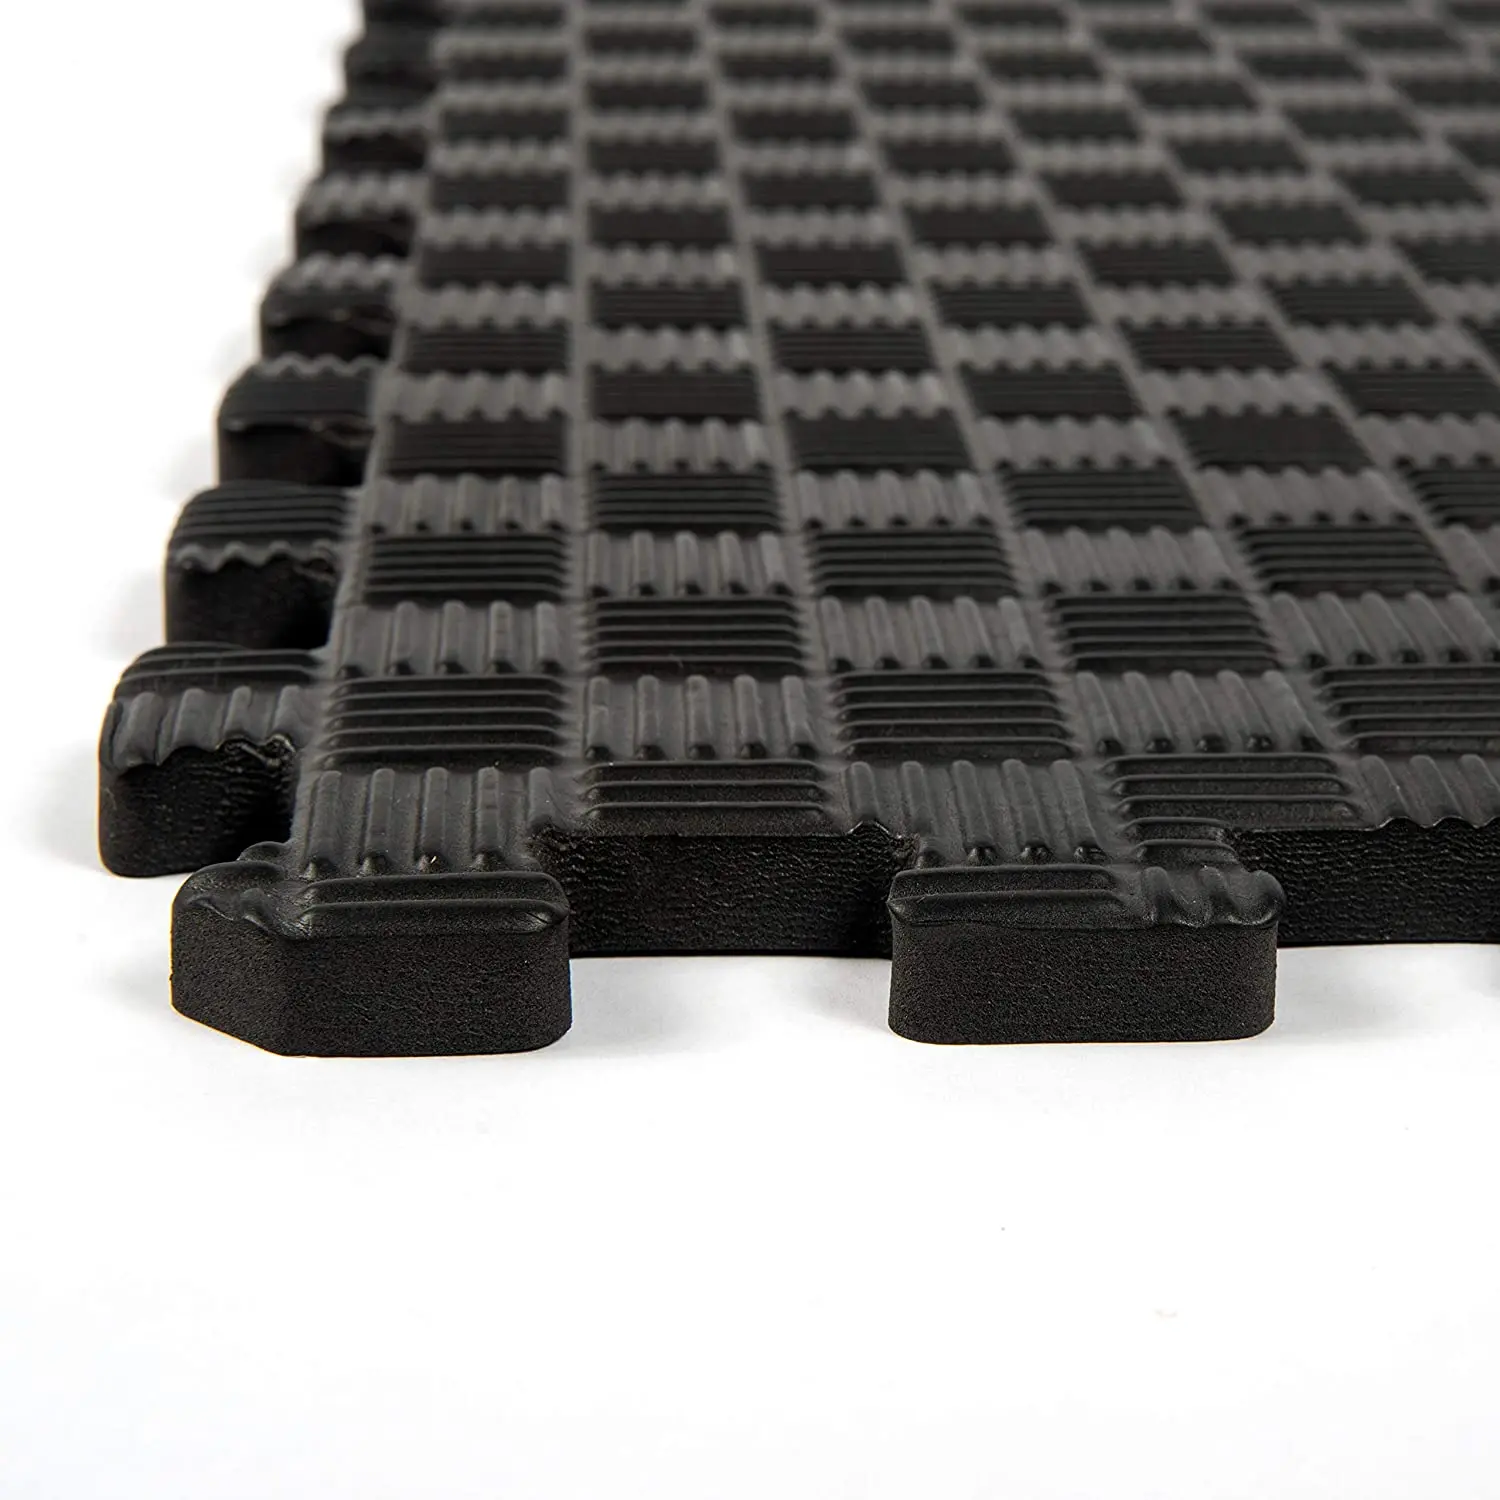 Horizon high density multi size taekwondo eva foam fitness equipment mat tatami floor for home fitness protective floor